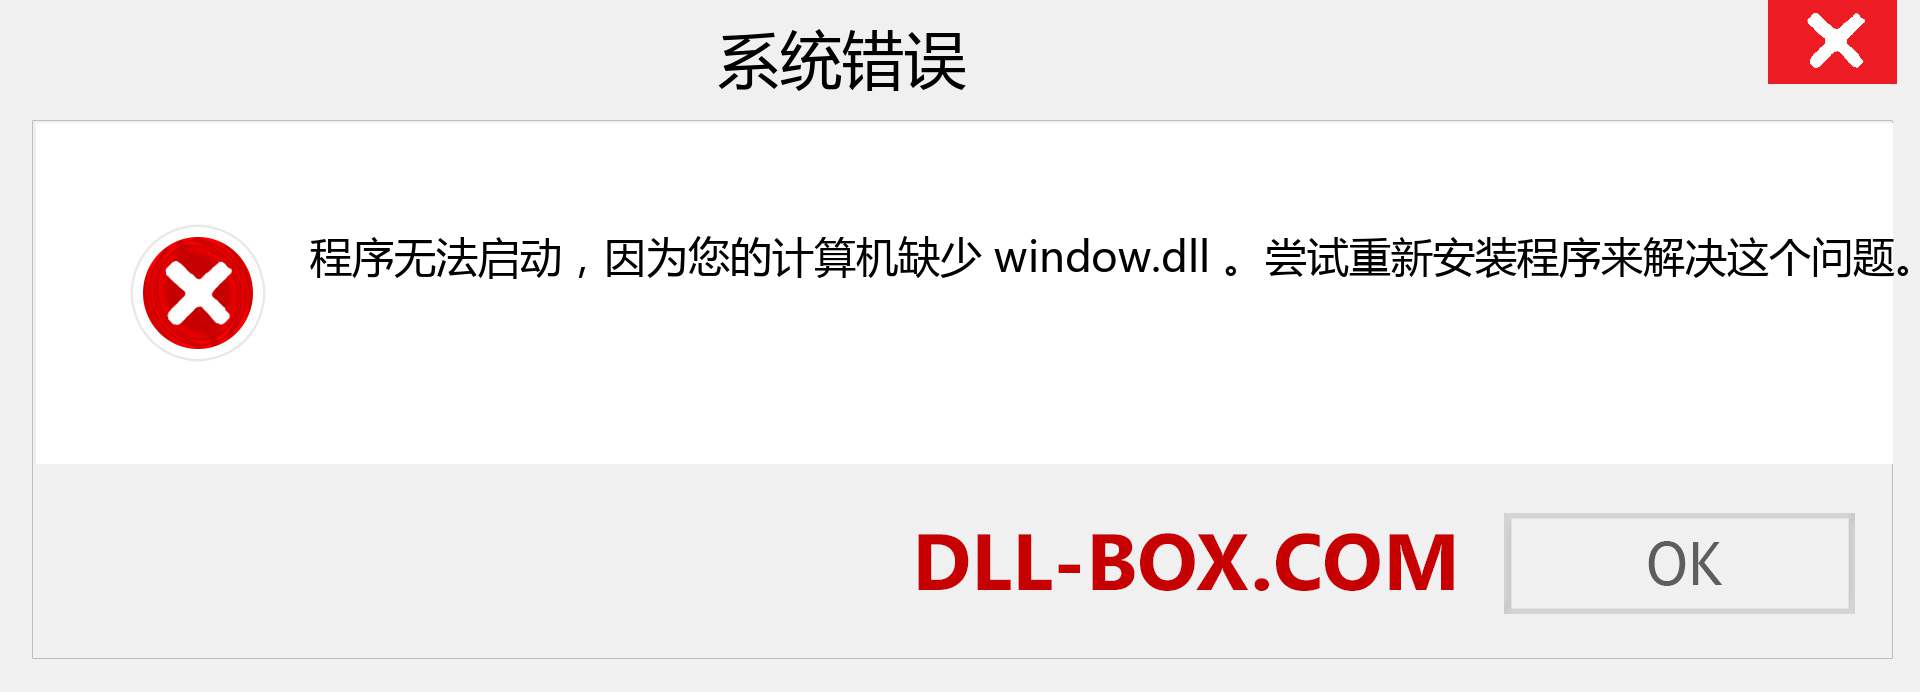 window.dll 文件丢失？。 适用于 Windows 7、8、10 的下载 - 修复 Windows、照片、图像上的 window dll 丢失错误